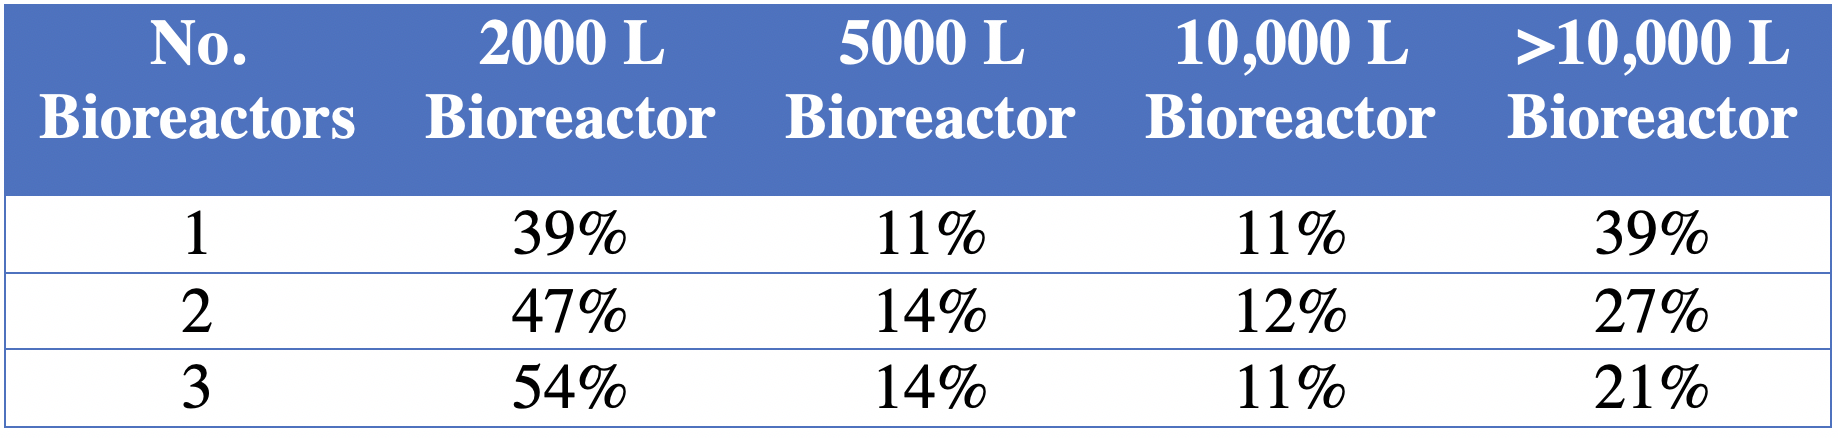 表二:生物反应器规模满足产品需求的百分比